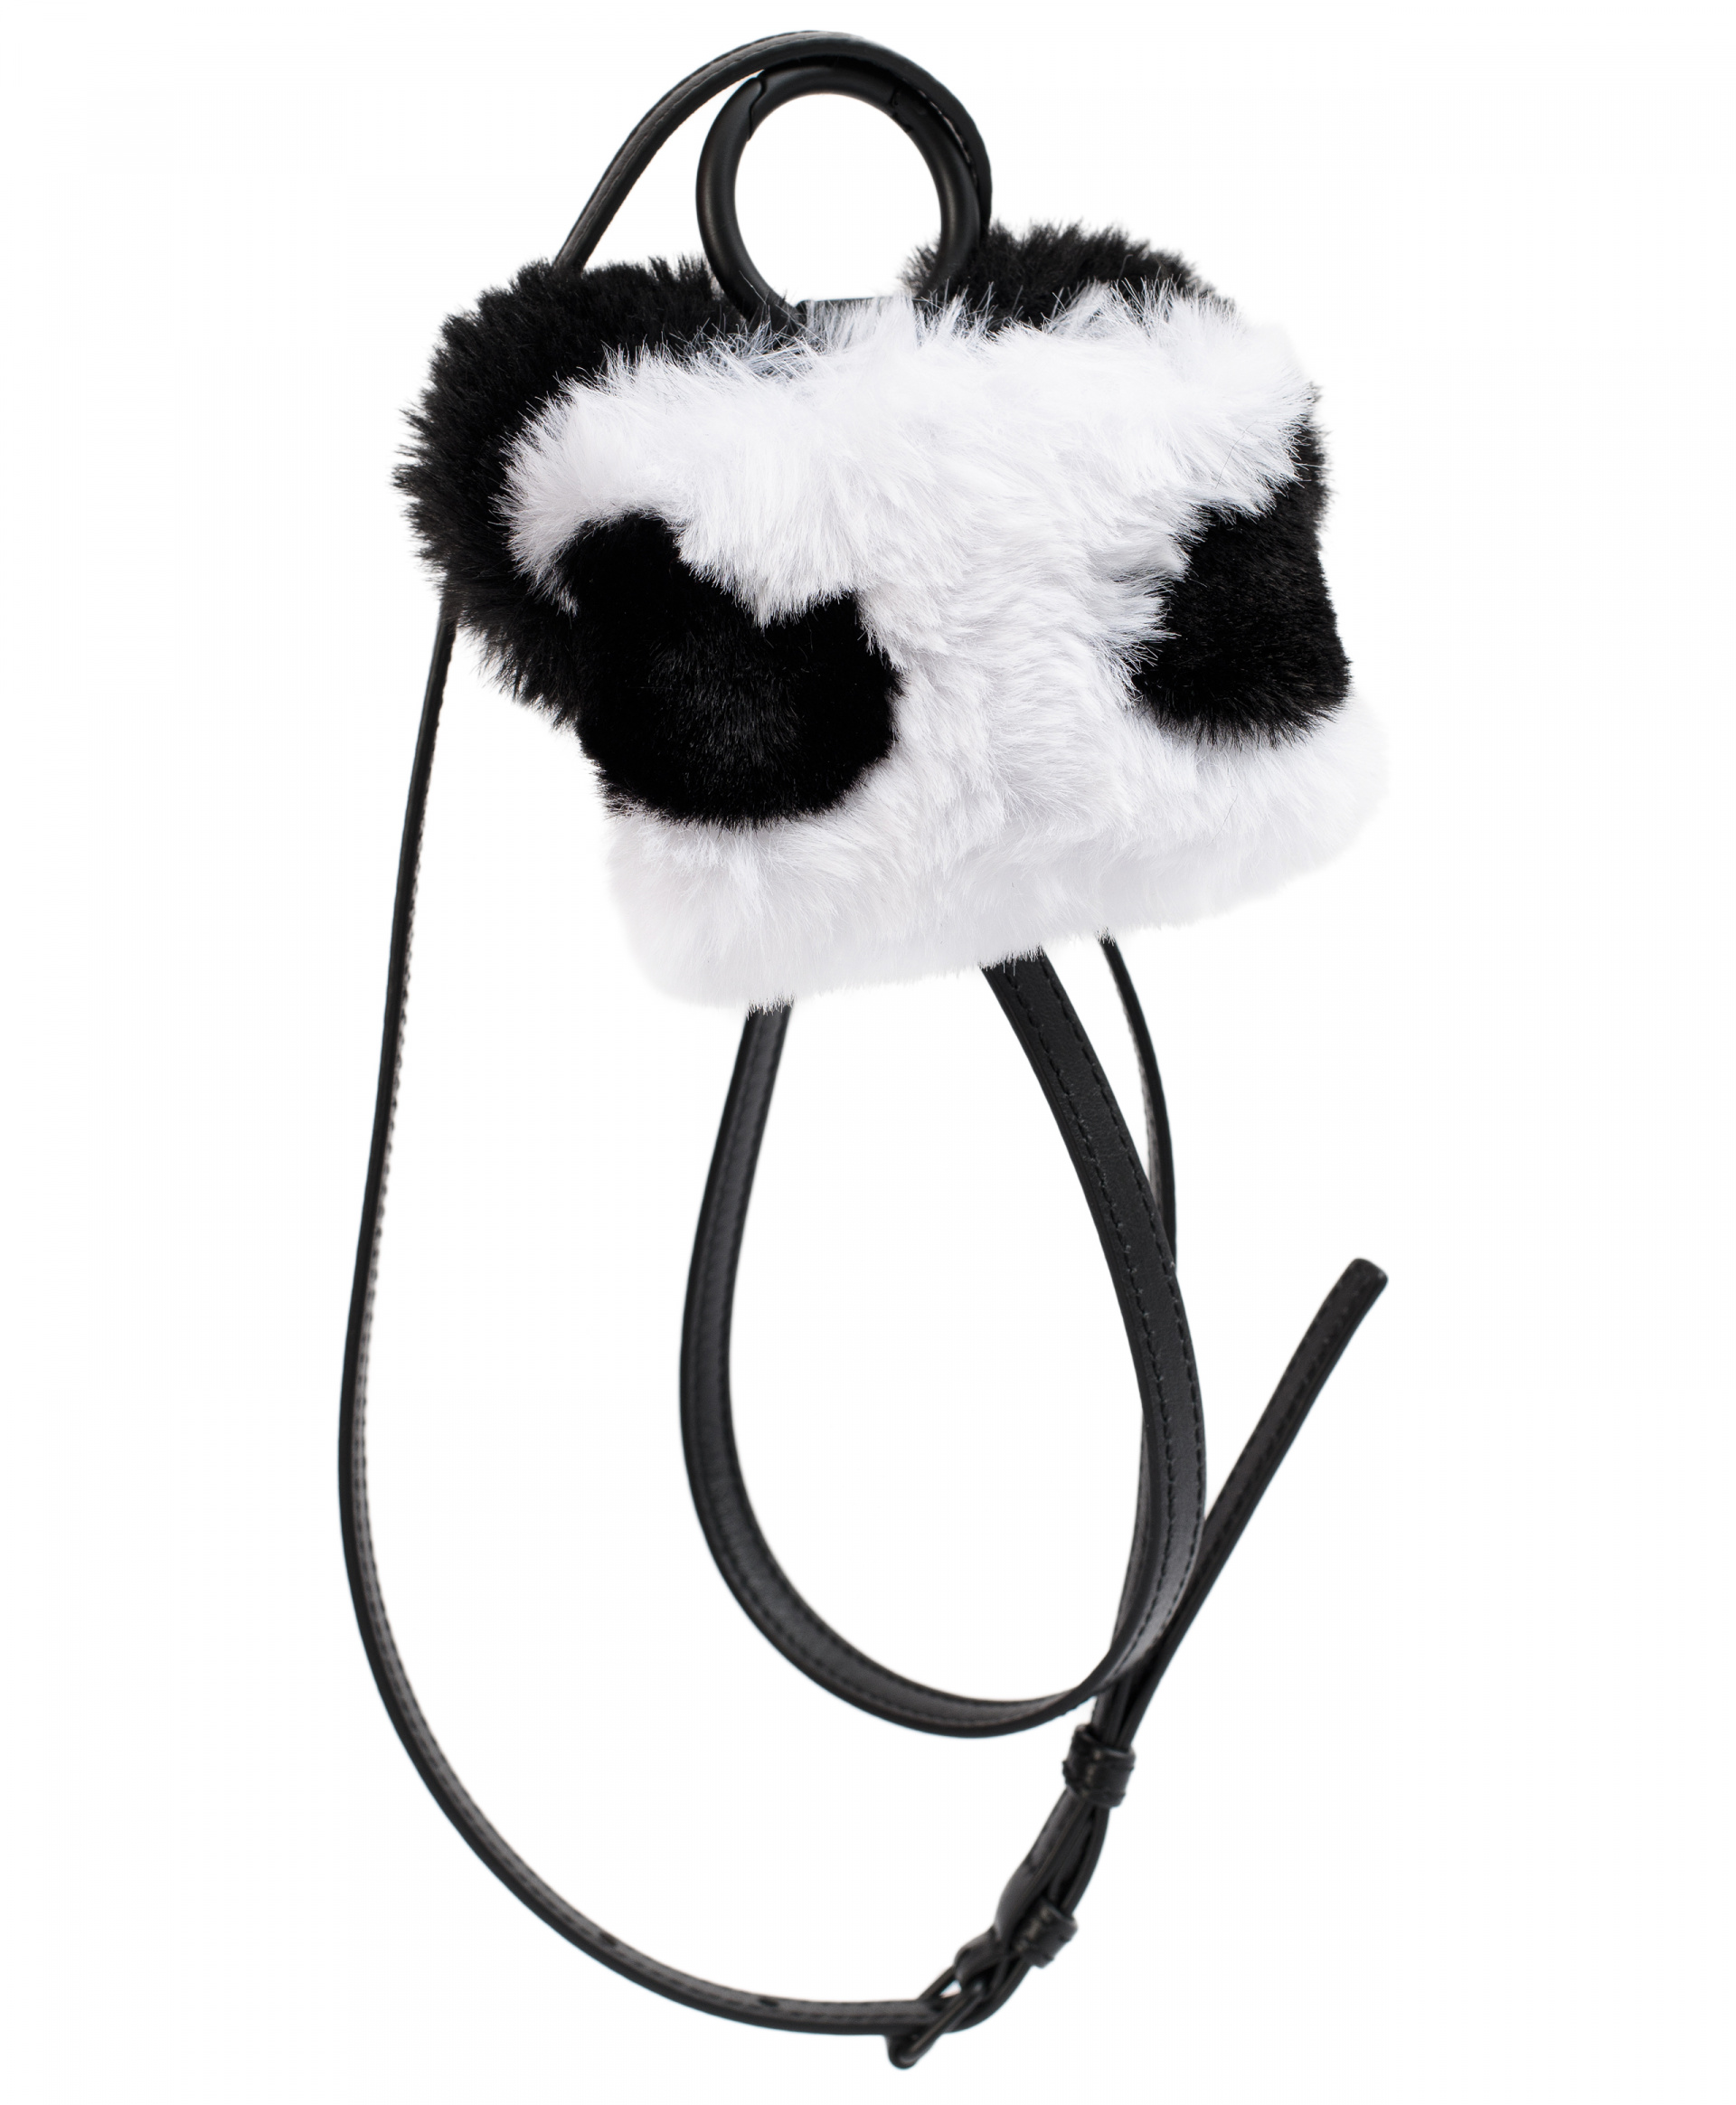 Balenciaga Fluffy panda airpods case with strap